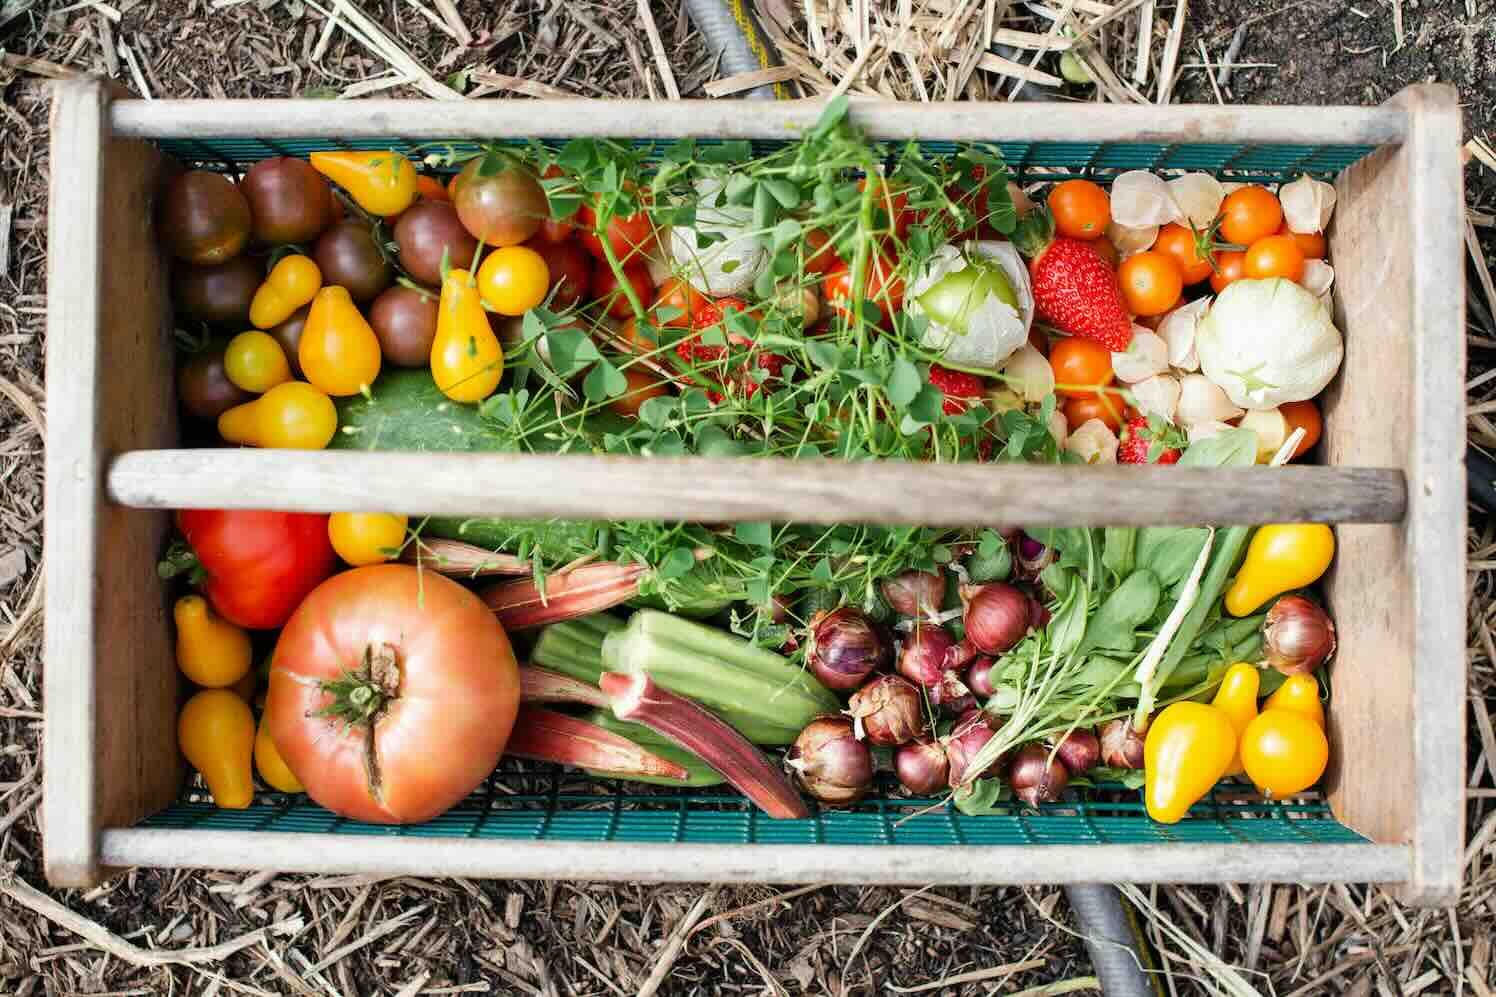 Zelf groente en fruit verbouwen: op weg naar duurzaamheid